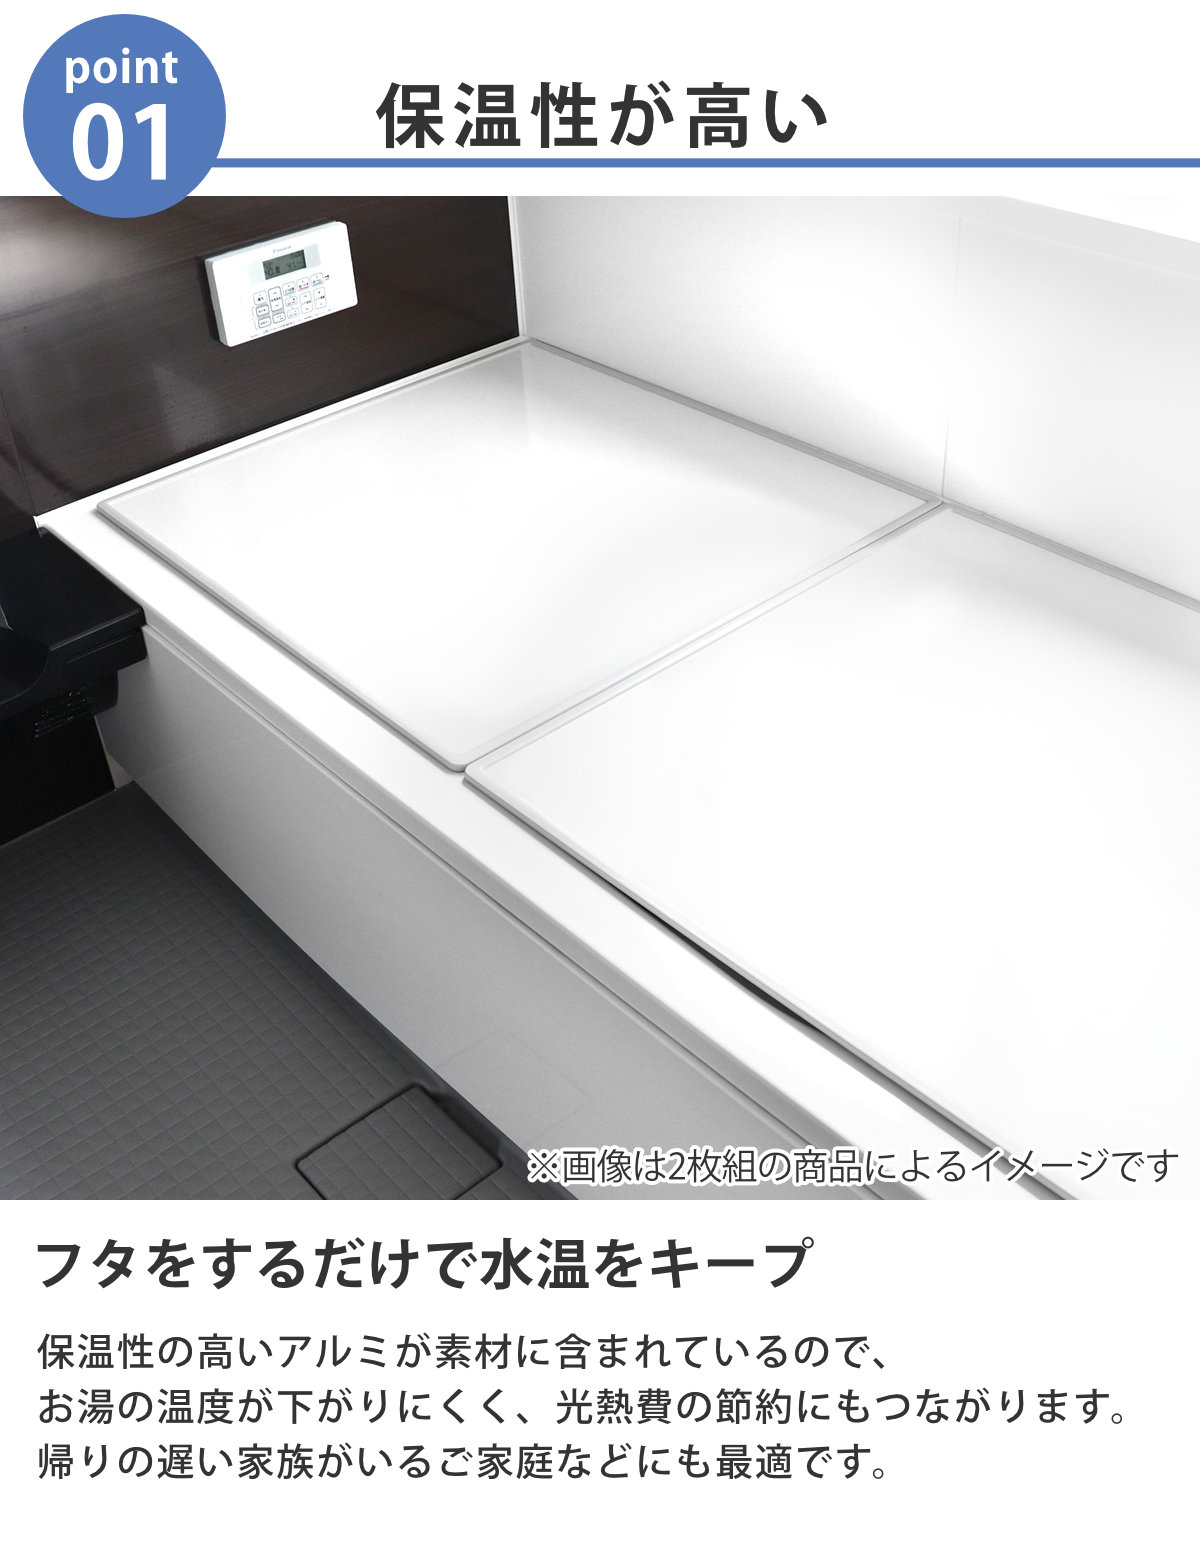 風呂ふた サイズ 75×160cm用 風呂蓋 風呂フタ 保温 板 73×158cm お風呂のふた 省スペース 防カビ 日本製 3枚割 冷めにくい お風呂の蓋  組み合わせ